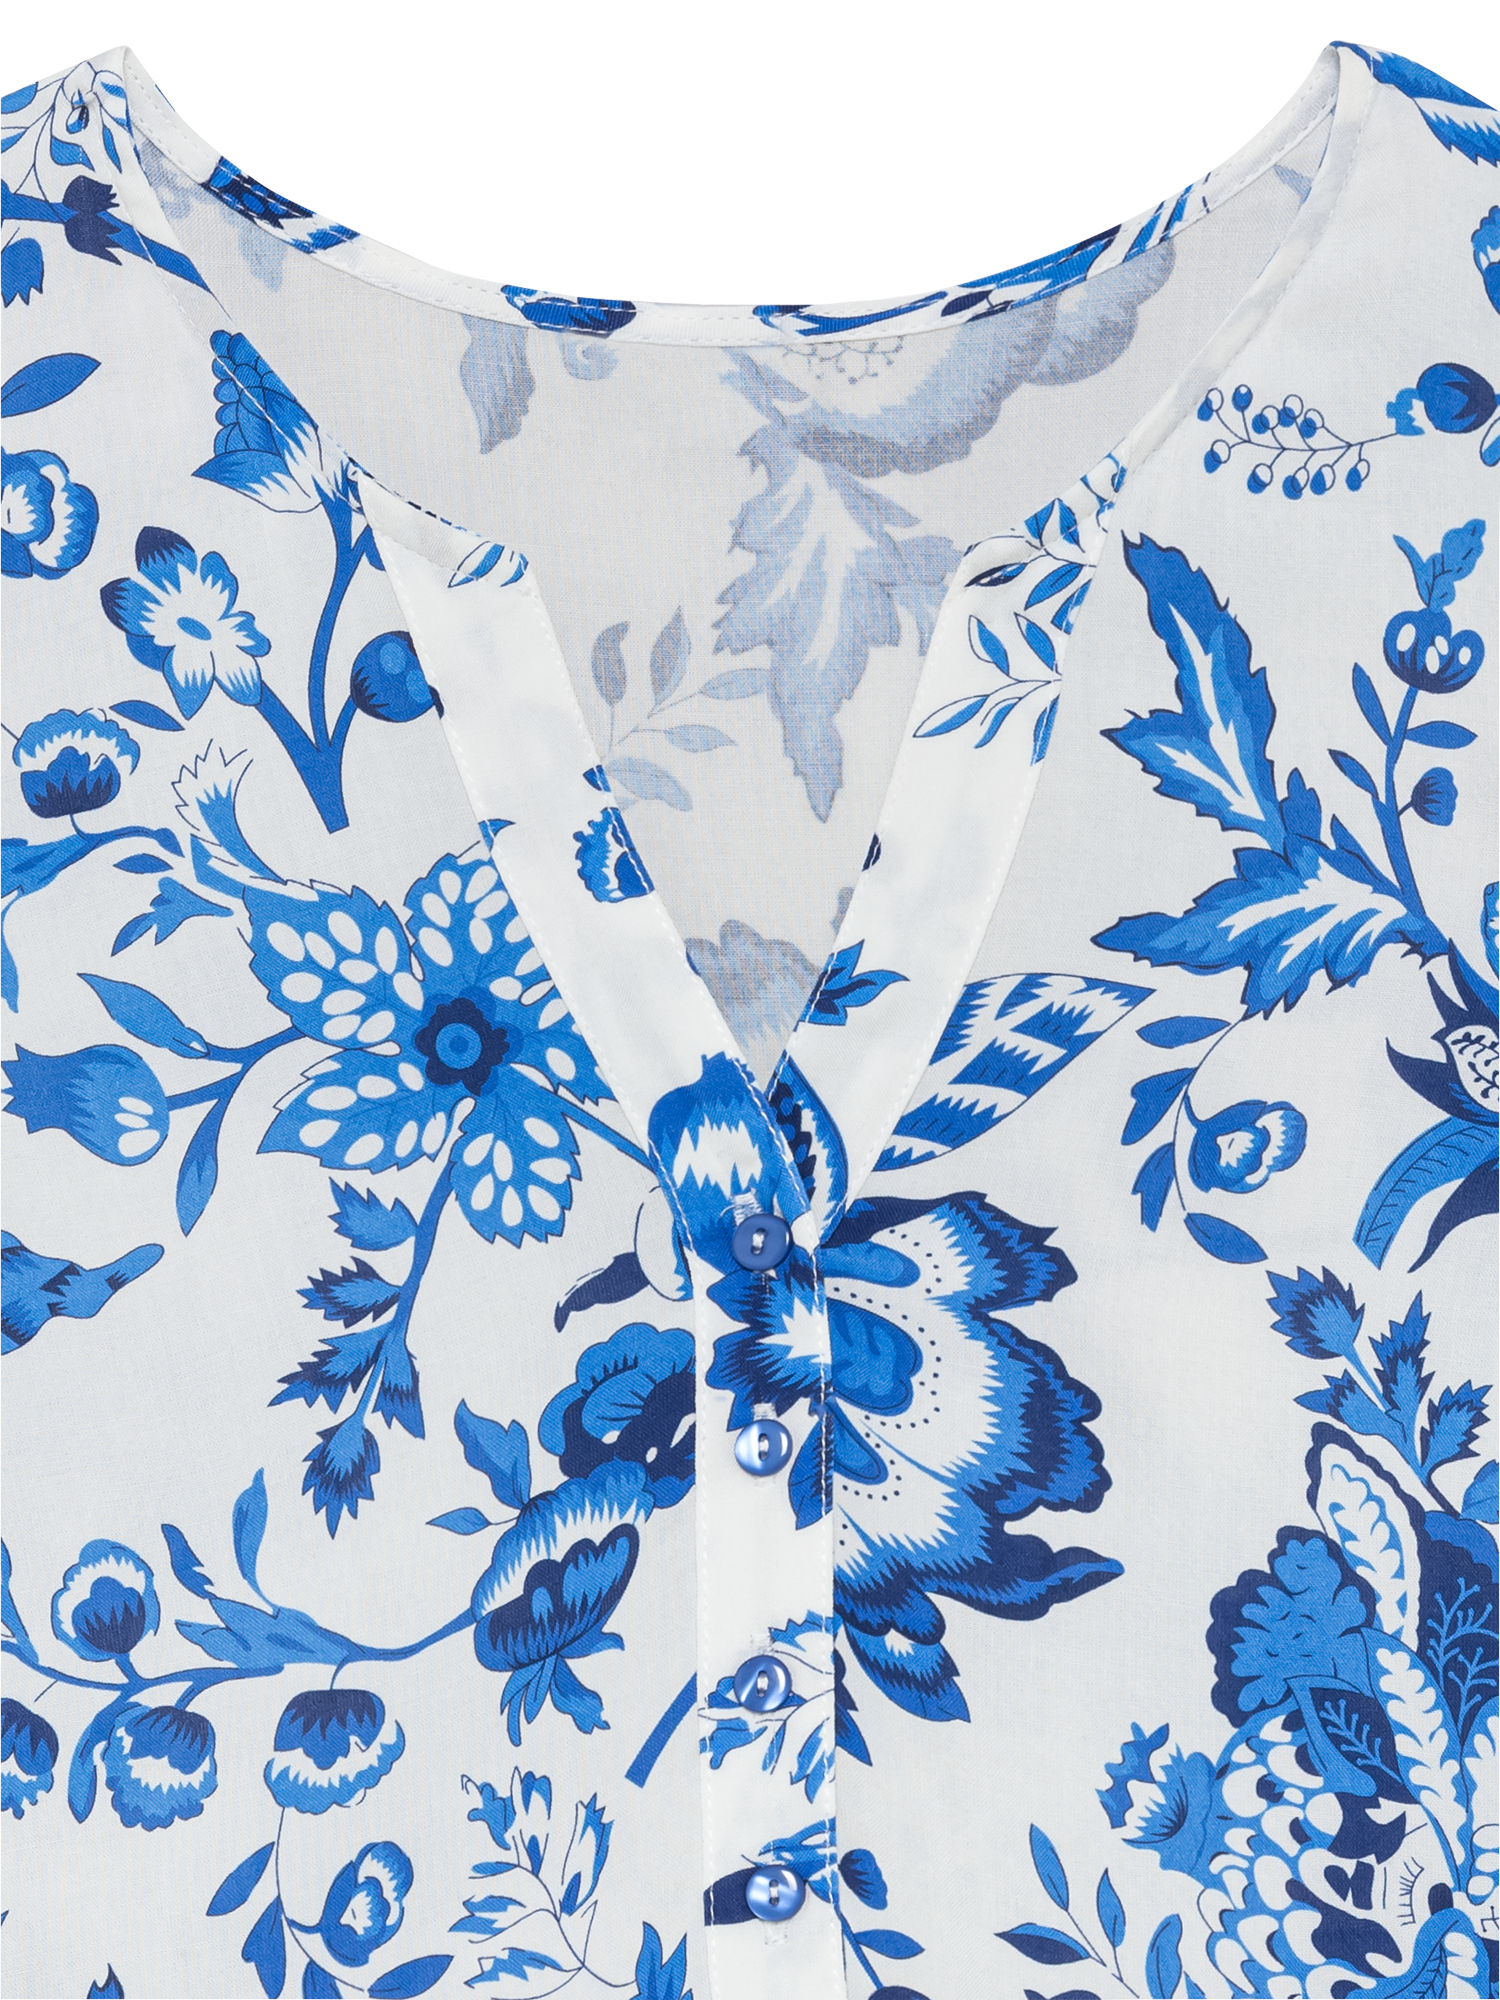 LASCANA Maxikleid, mit Blumenprint und Knopfleiste, Sommerkleid, Strandkleid